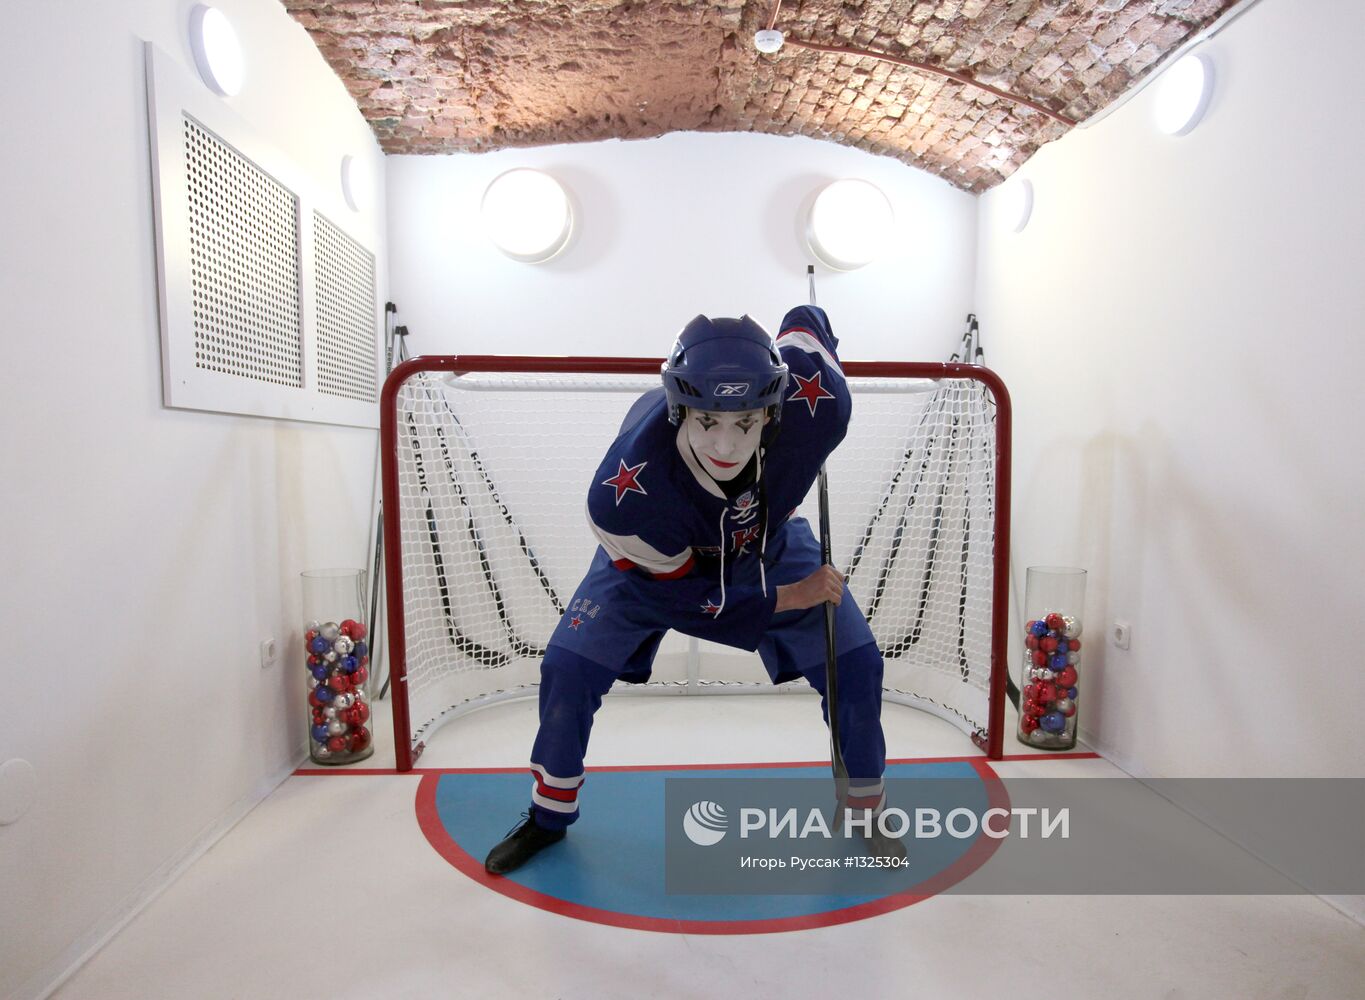 Открытие магазина хоккейного клуба СКА на Невском проспекте